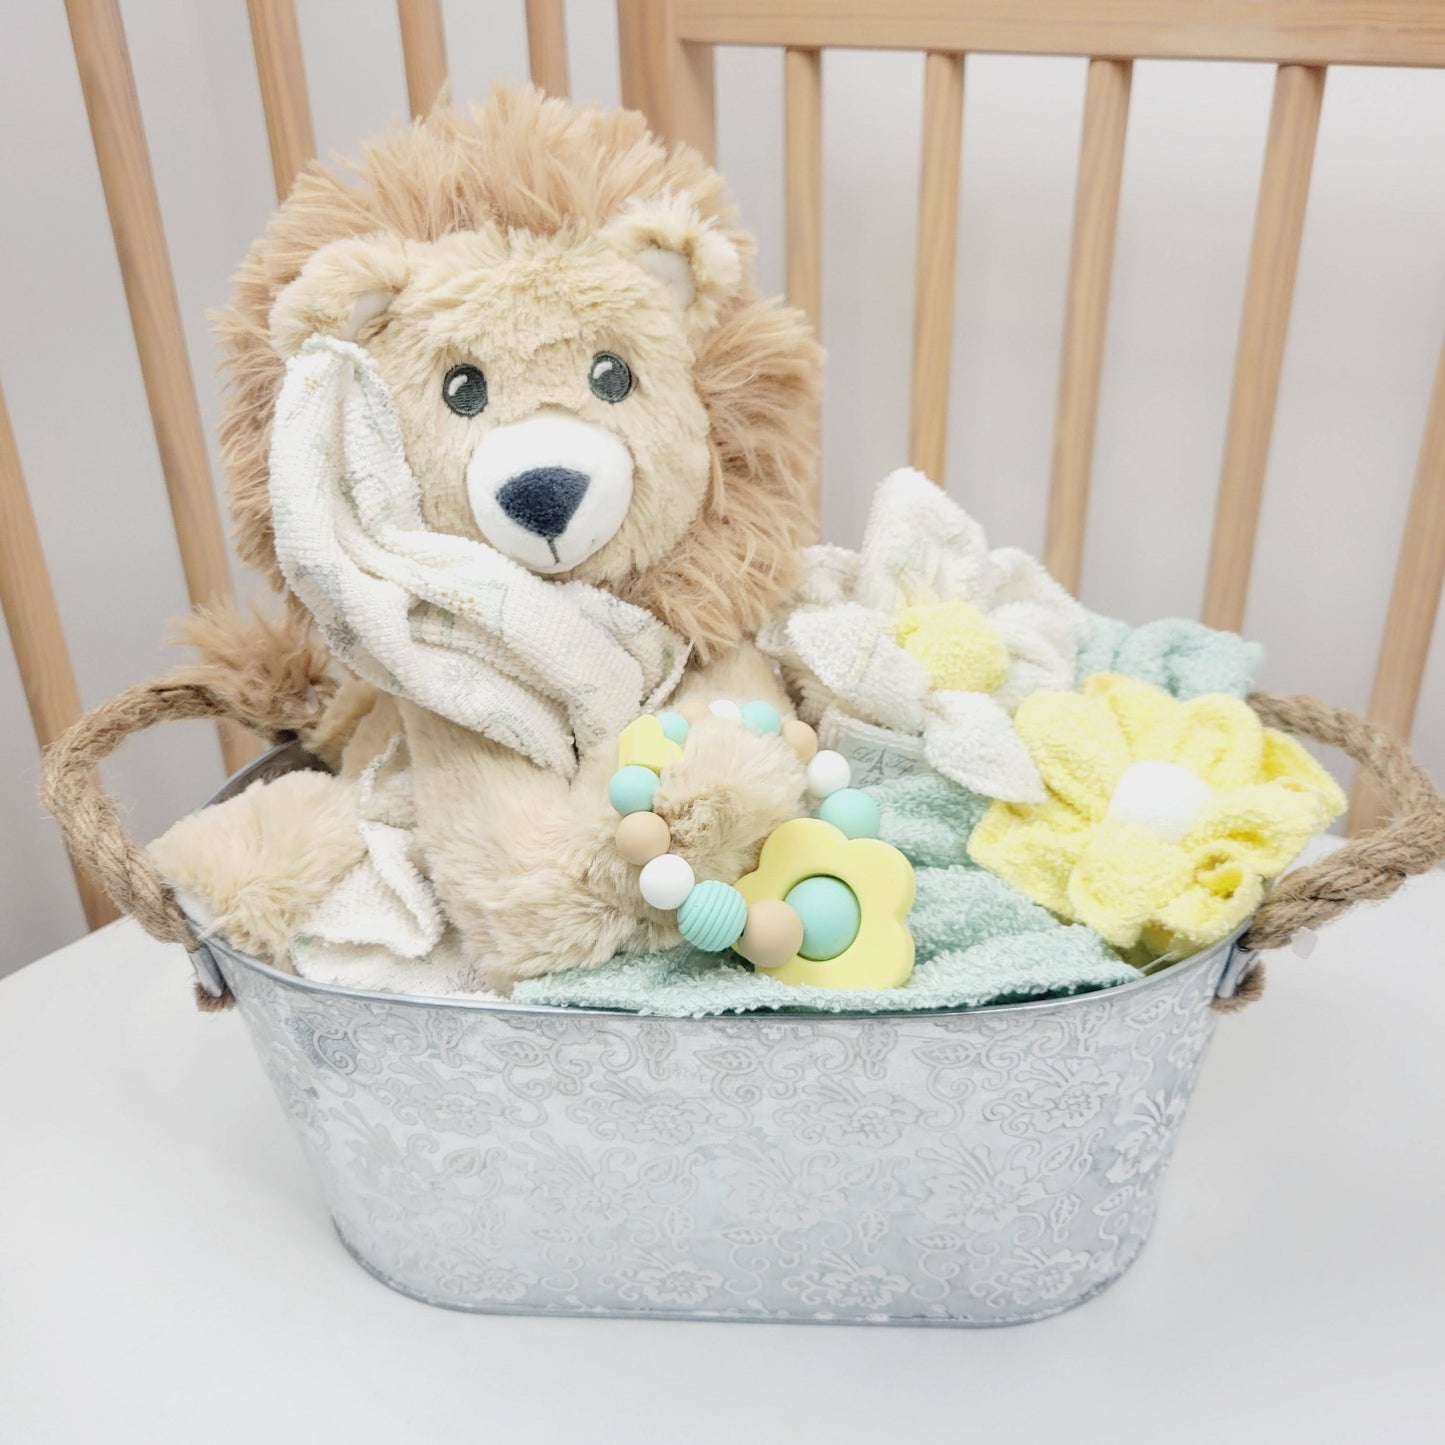 Ensemble cadeau pour babyshower, panier contenant des débarbouillettes en fleur, un toutou de lion avec un jouet de dentition en silicone.